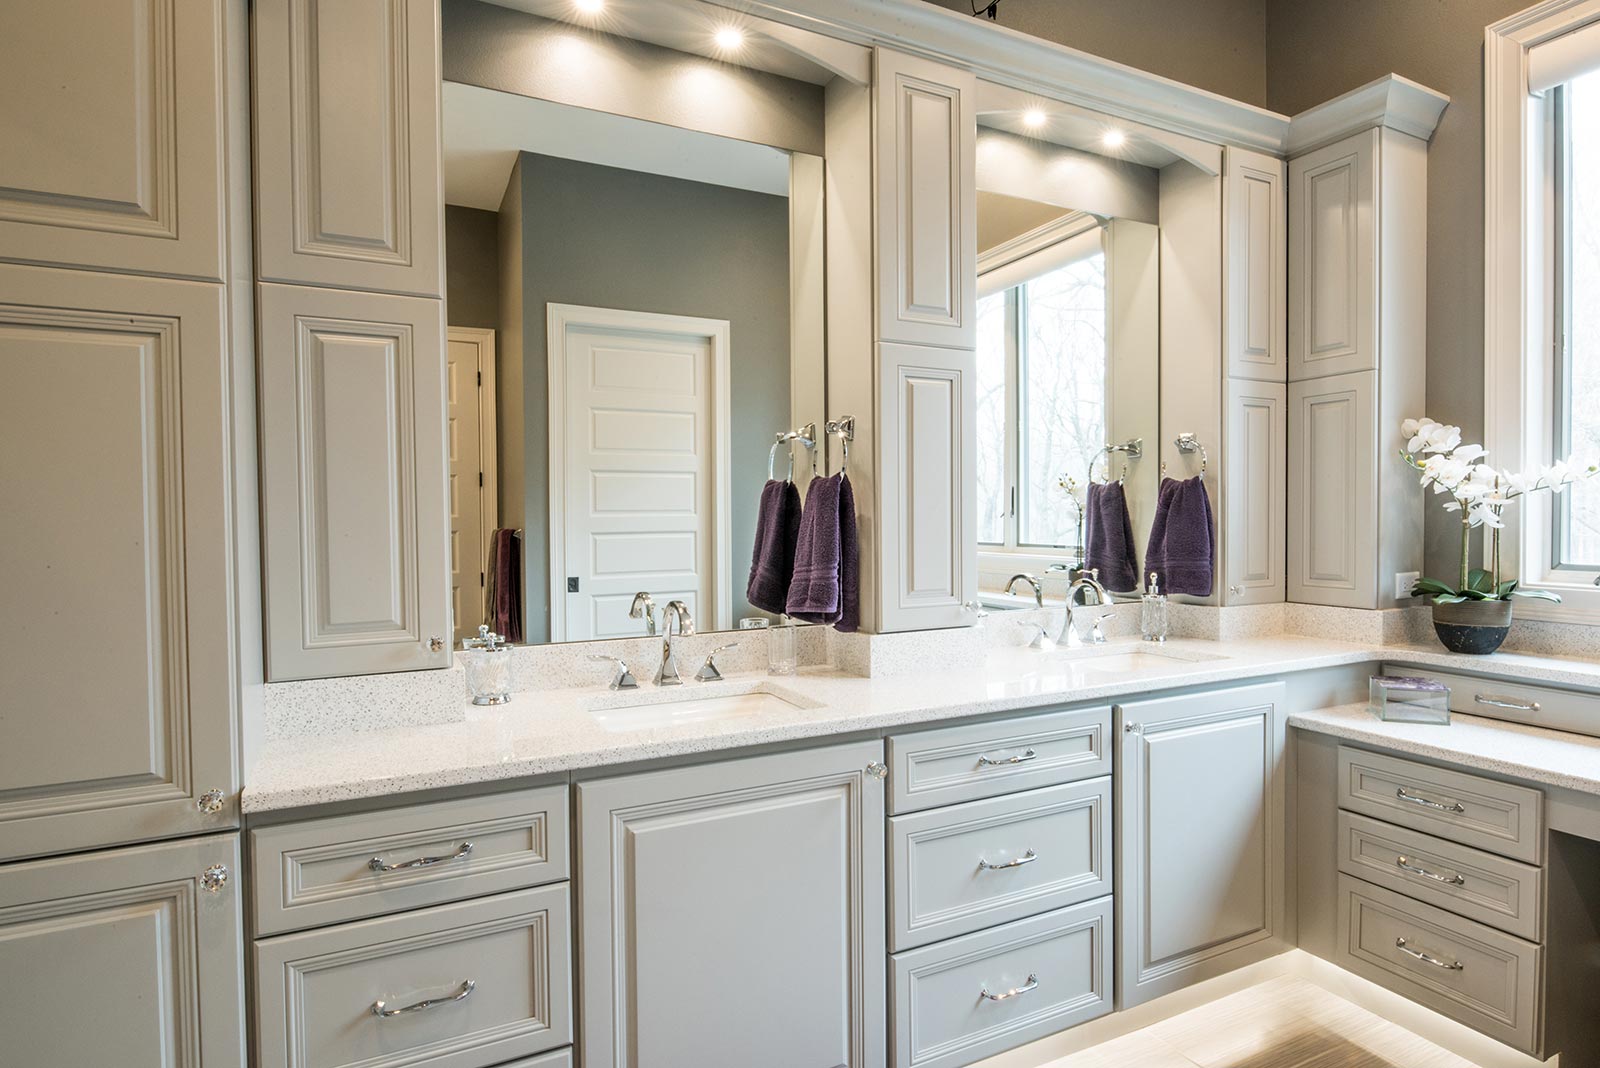 Double Vanity Bathroom Ideas: 10 Expert Design Tips